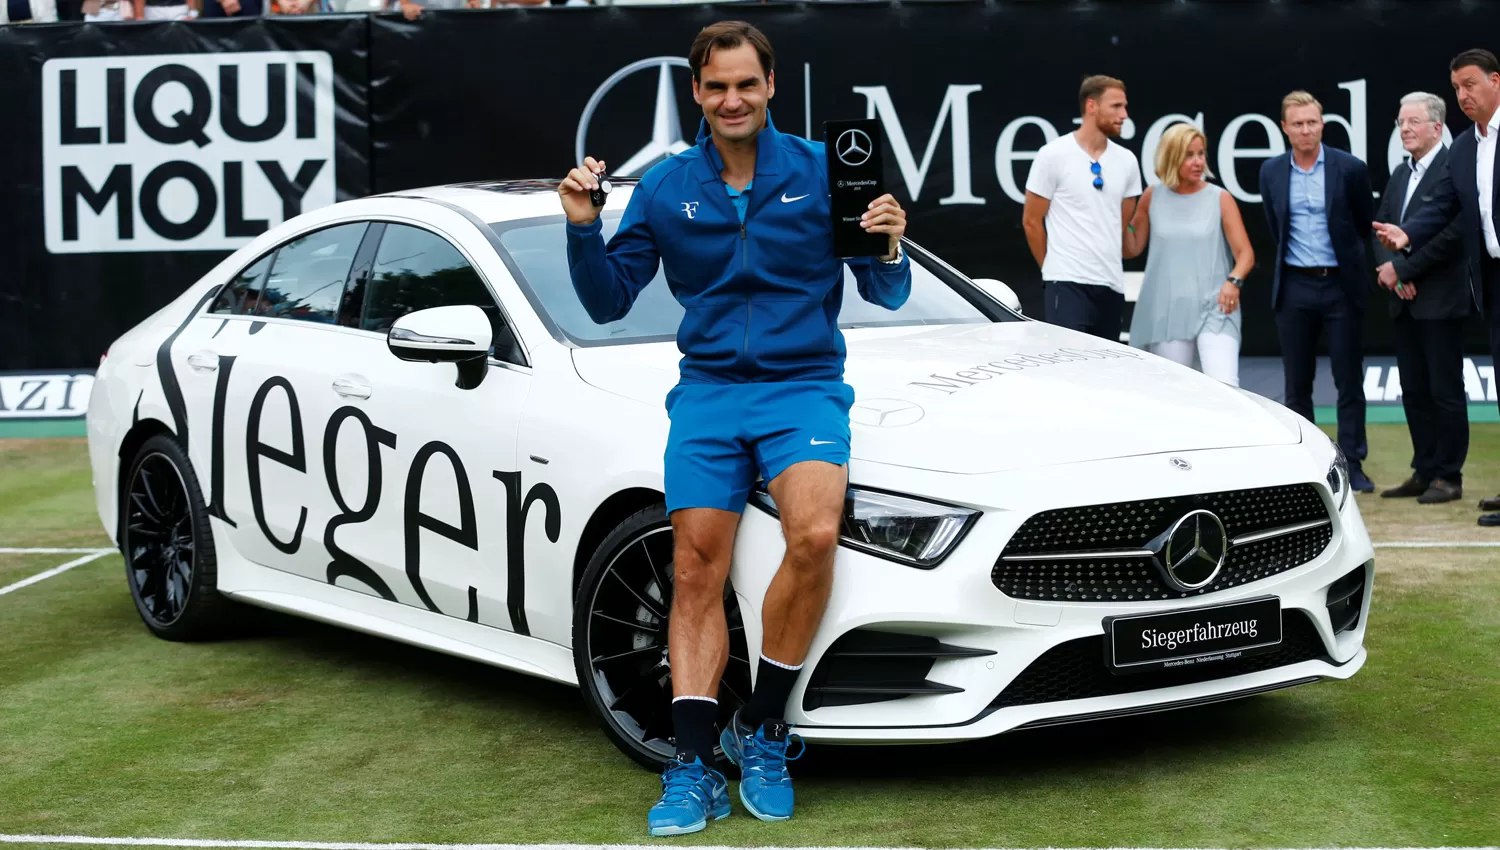 EL REGRESO. Federer recuperó el 1 y se prepara para buscar otro título en Wimbledon. REUTERS